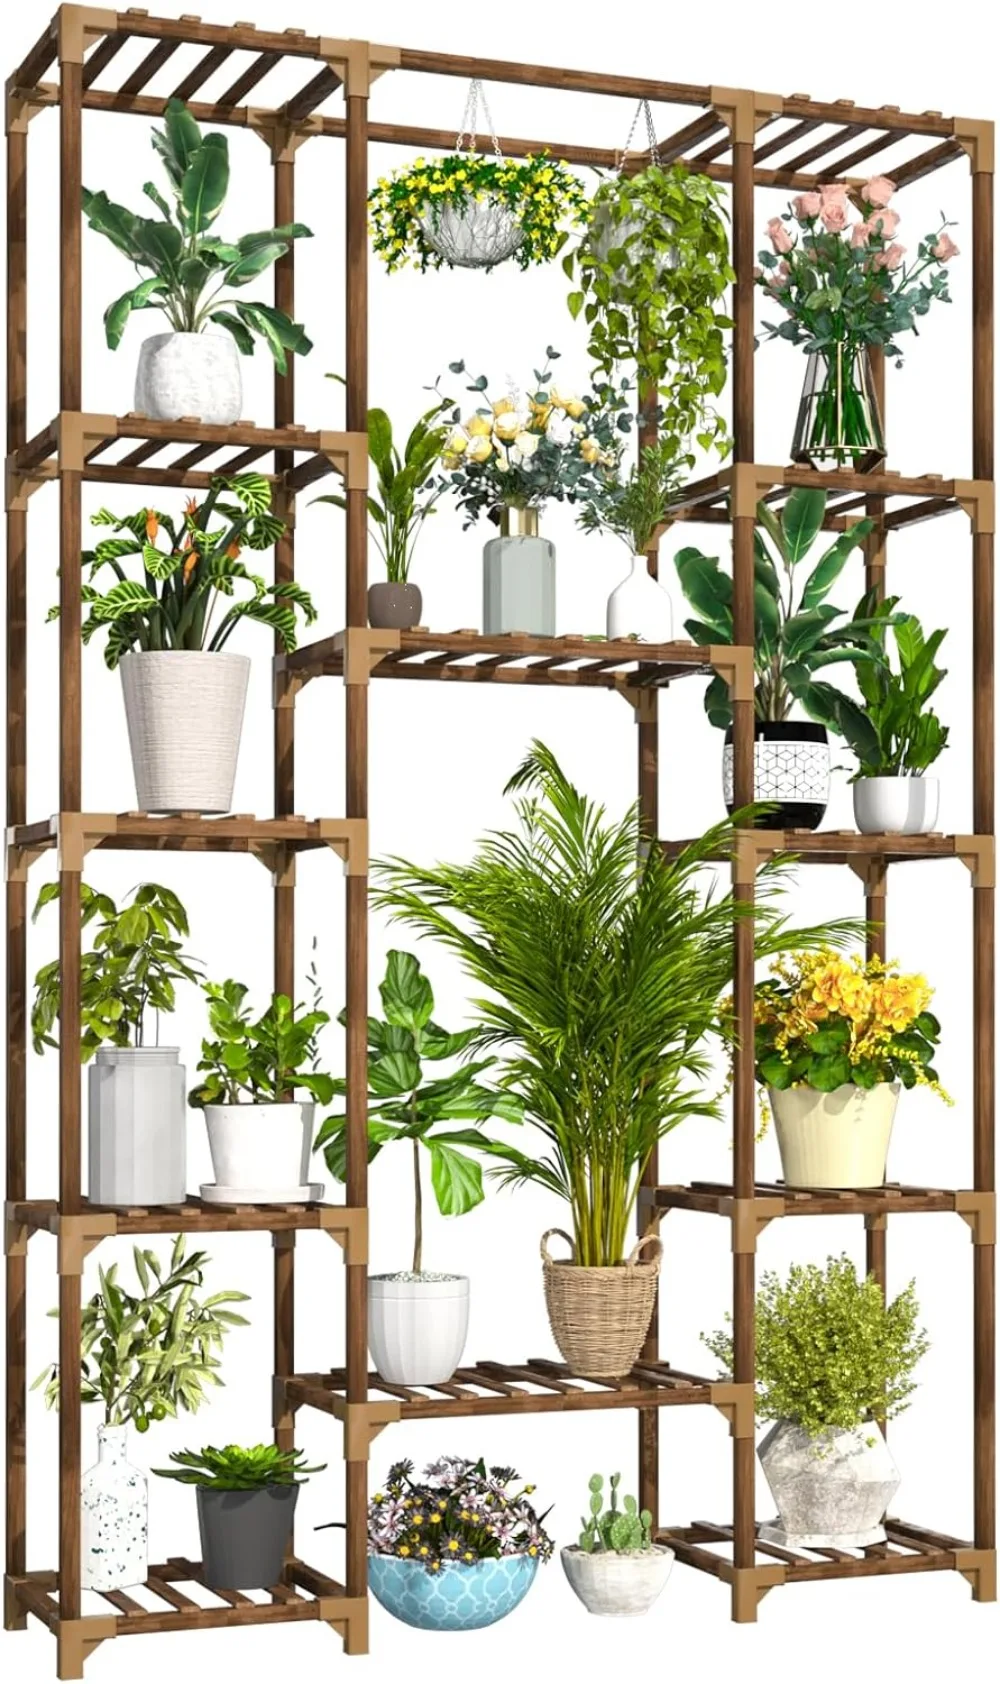 

Подставка для растений Uneedem, для дома и улицы, высокая полка для нескольких растений, 12 ярусов, 14 горшков, большая стойка, деревянный держатель для растений